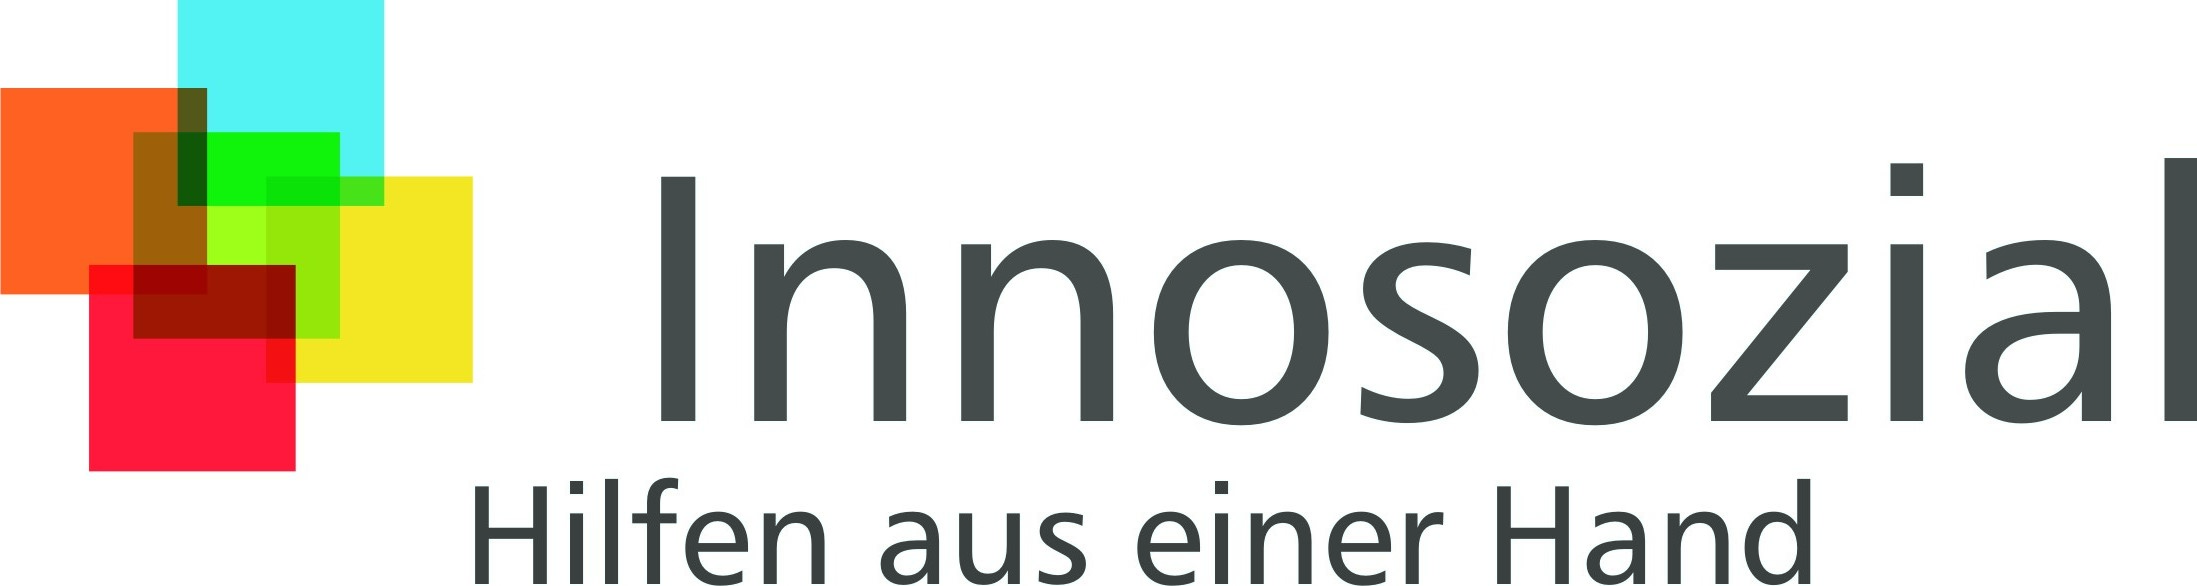 Logo_Innosozial.jpg